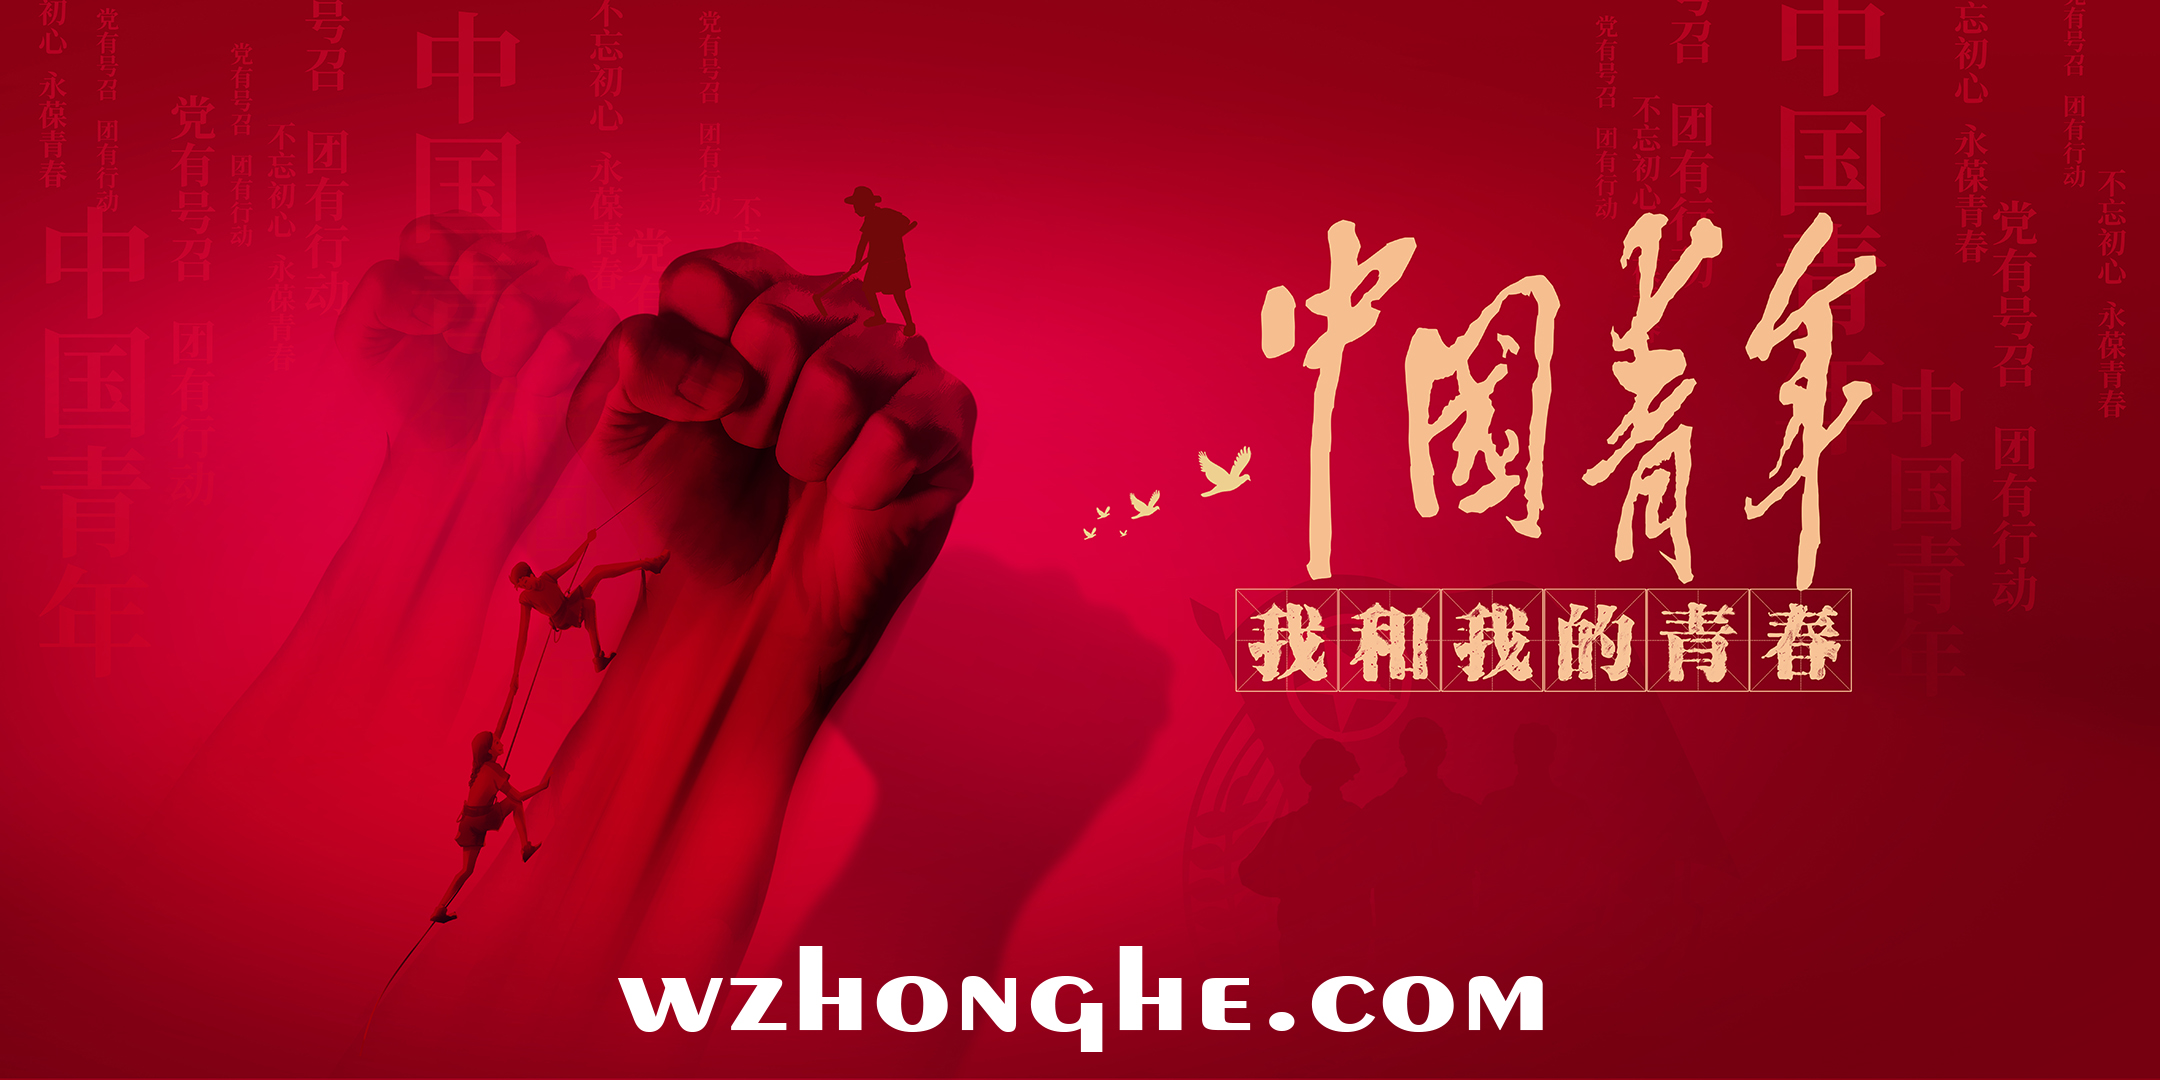 中国青年：我和我的青春 - 无中和wzhonghe.com -2